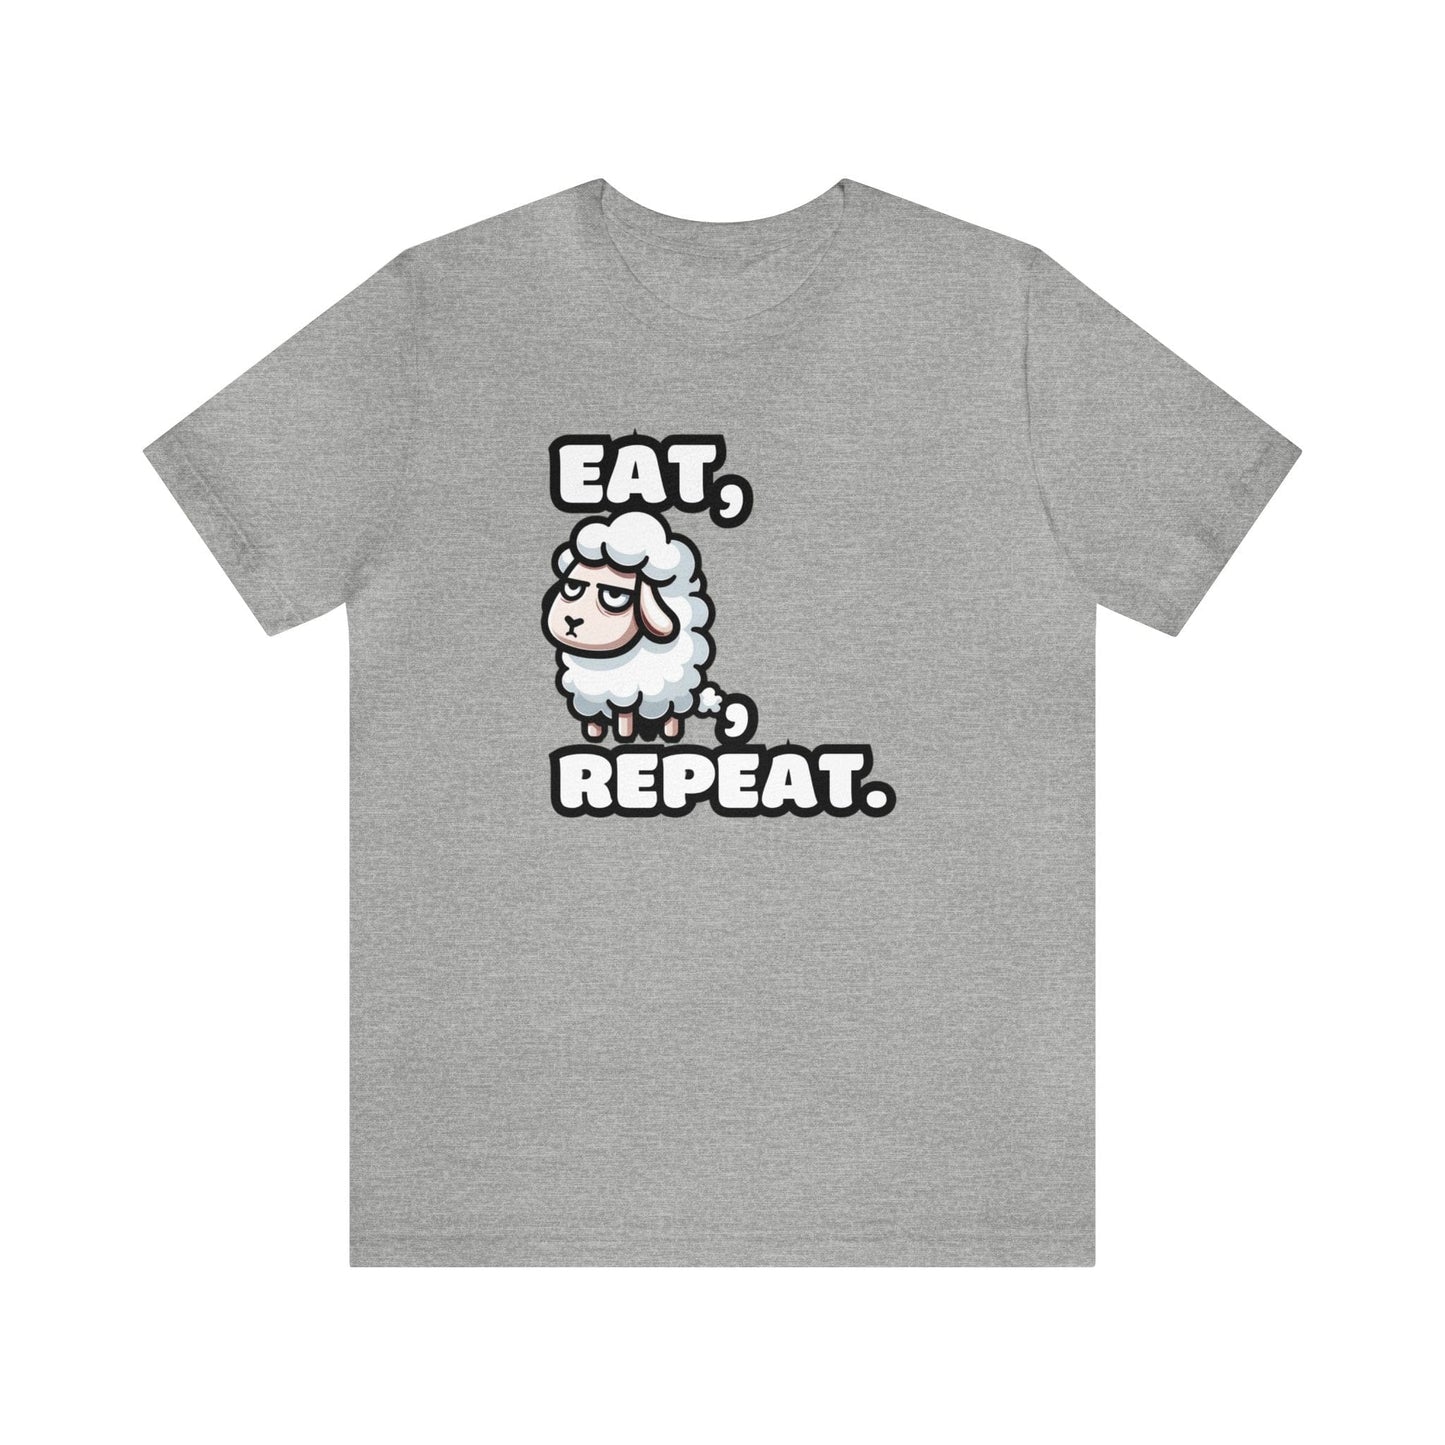 Eat, Sheep, Repeat - Sheep T-shirt Gray / S